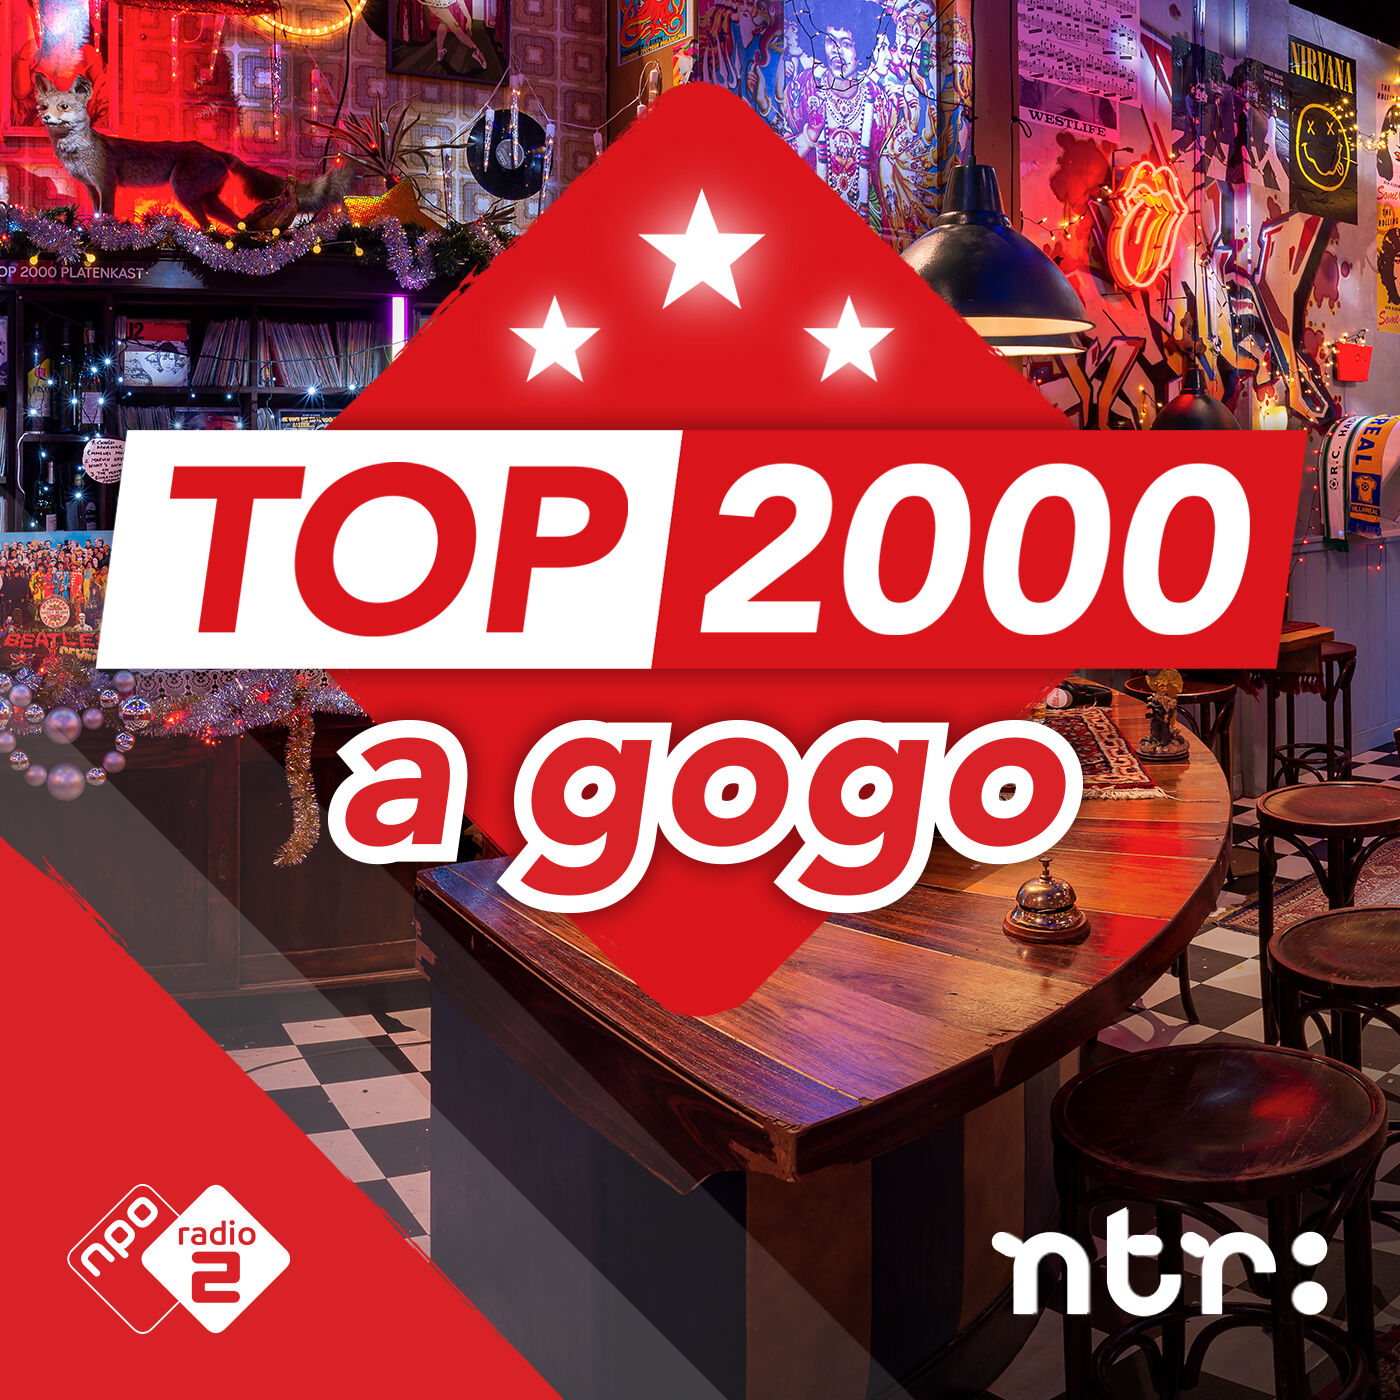 Top 2000 a gogo logo